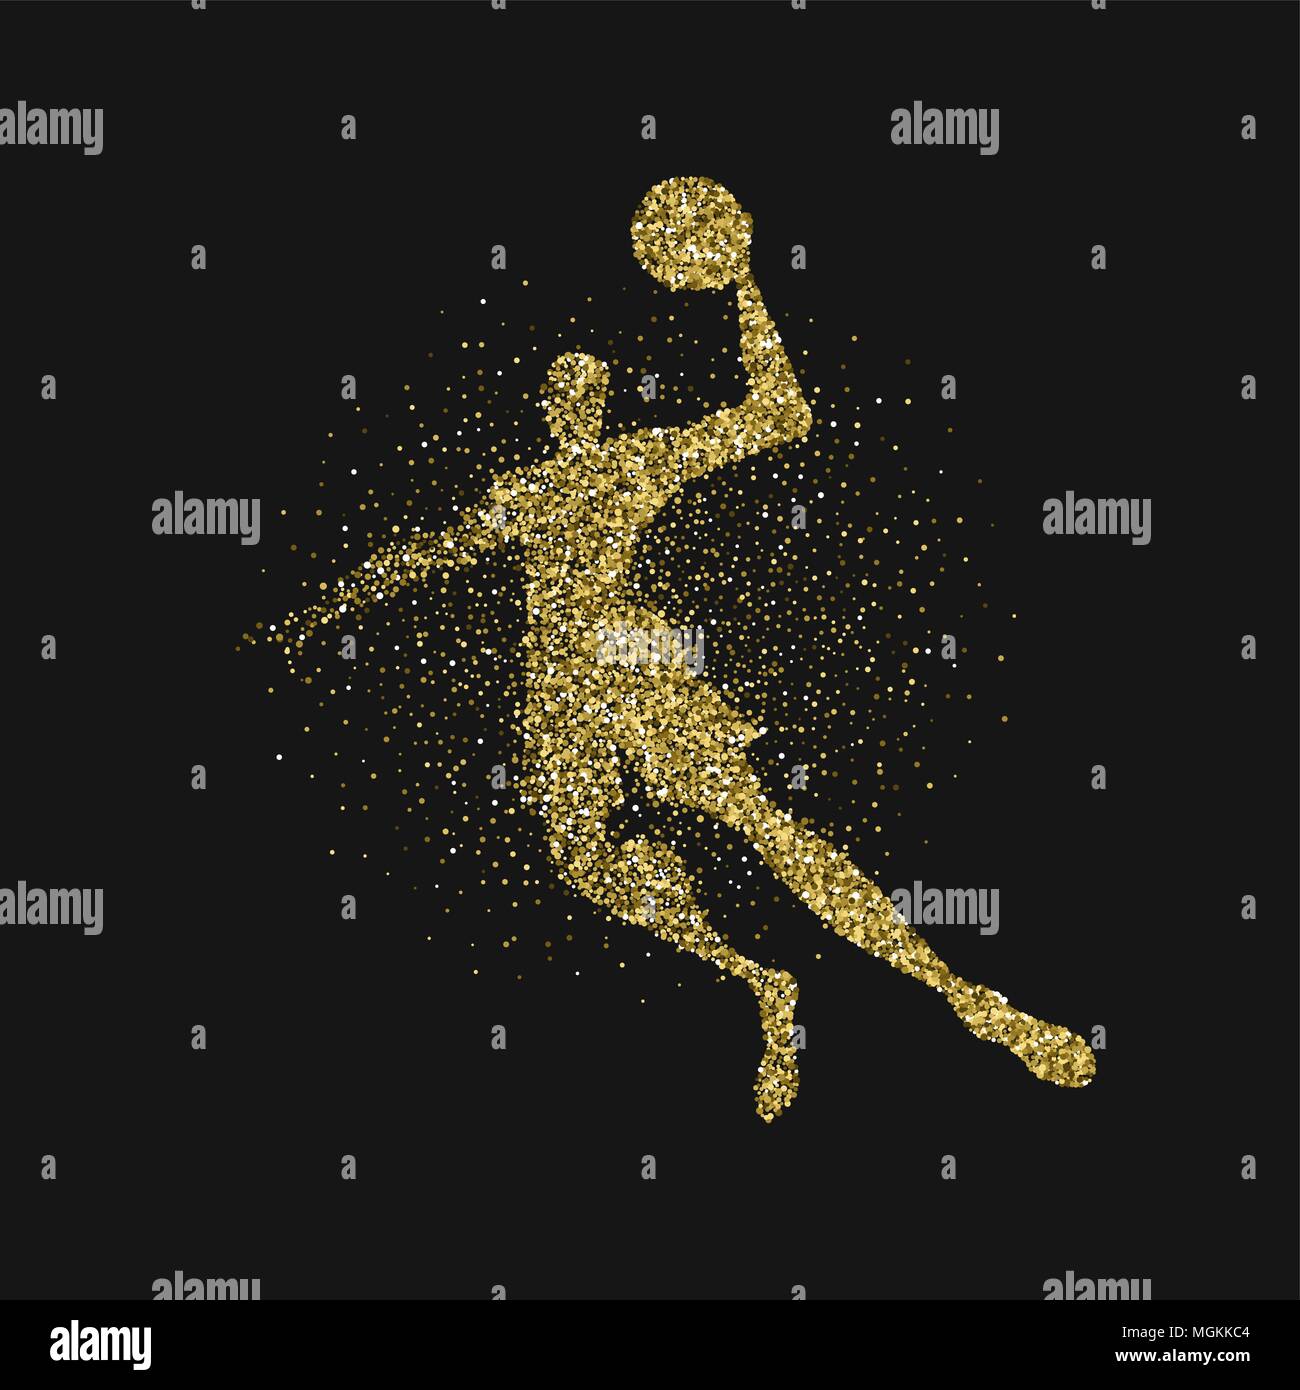 Basketball player Silhouette aus gold Glitter Staub splash auf schwarzem Hintergrund. Goldene Farbe Athlet Mann springen mit Basketball. EPS 10 Vektor. Stock Vektor